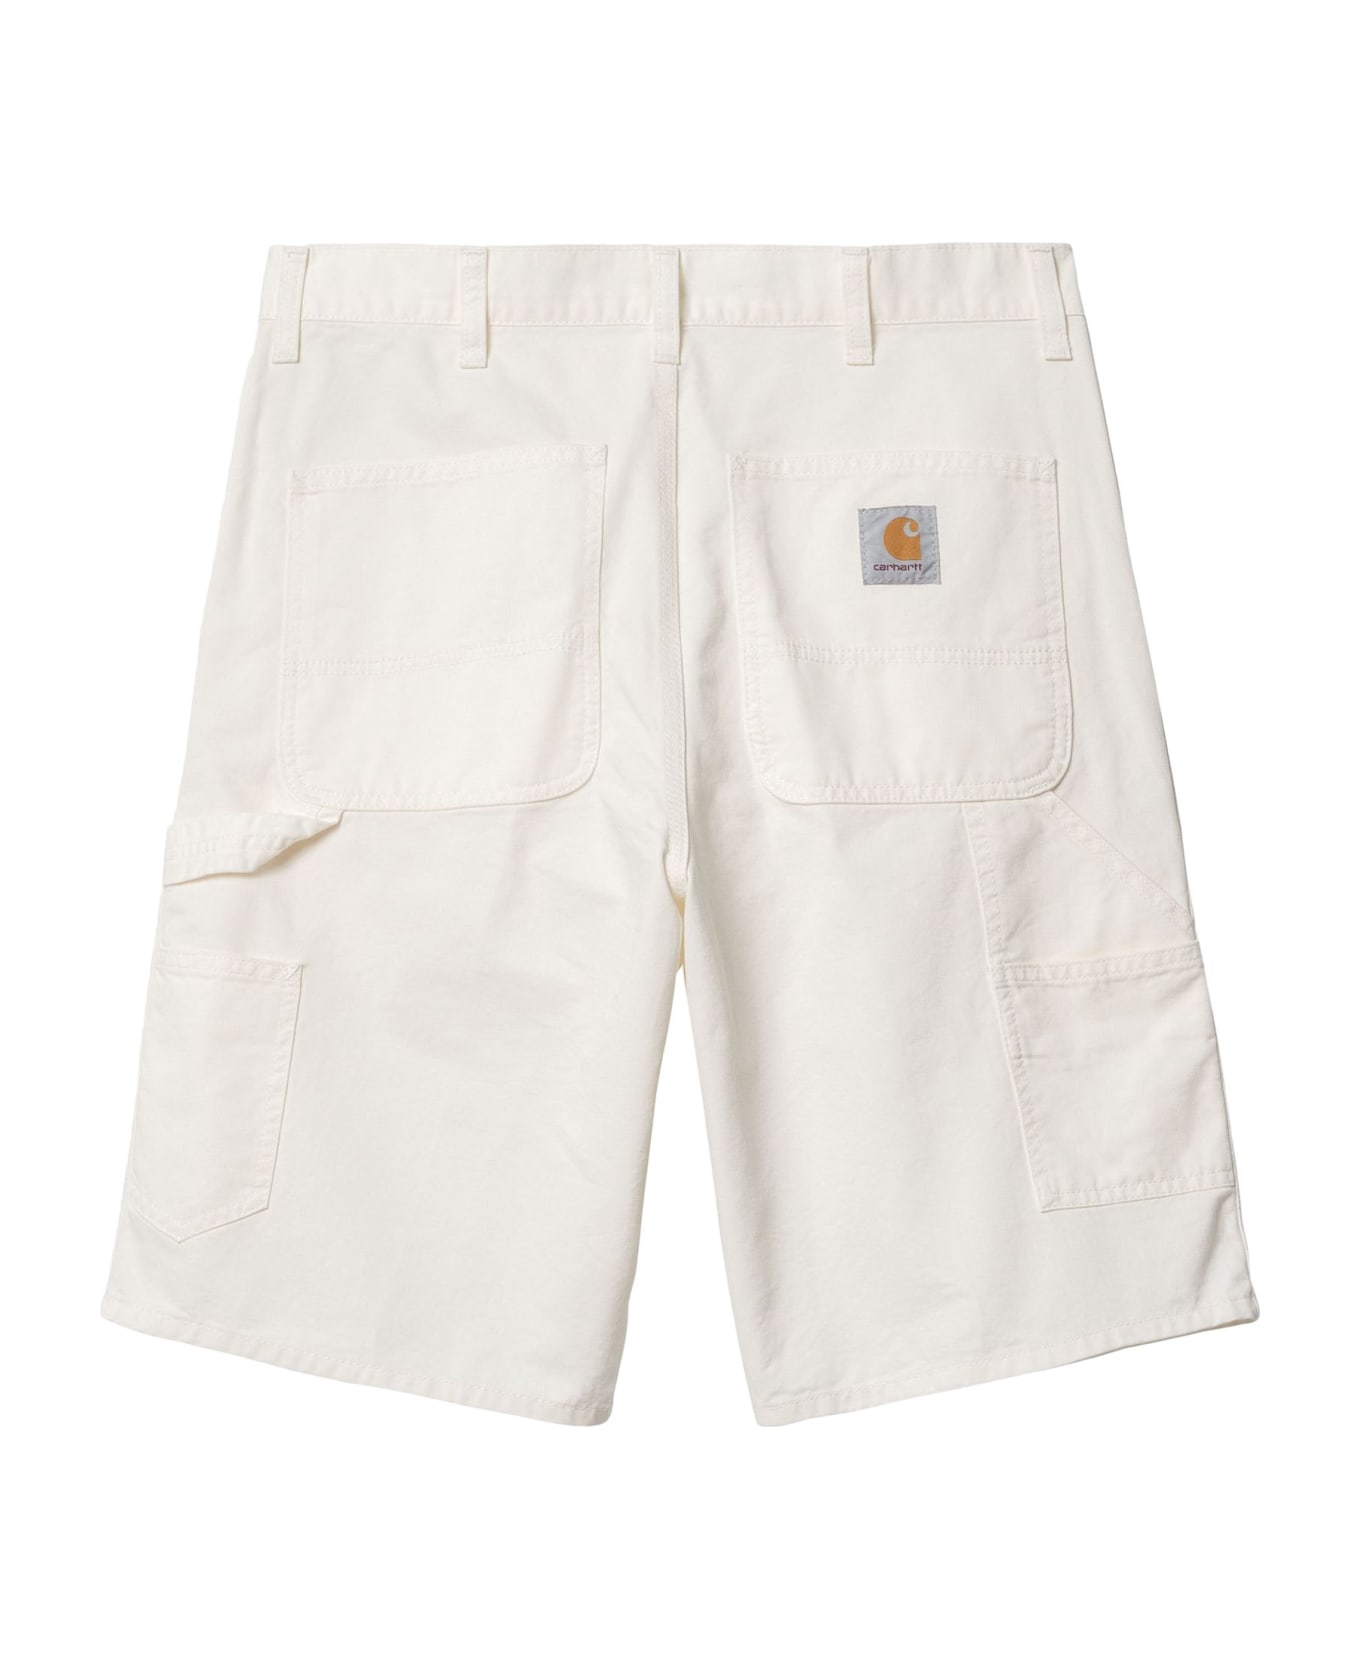 Carhartt Shorts White - White